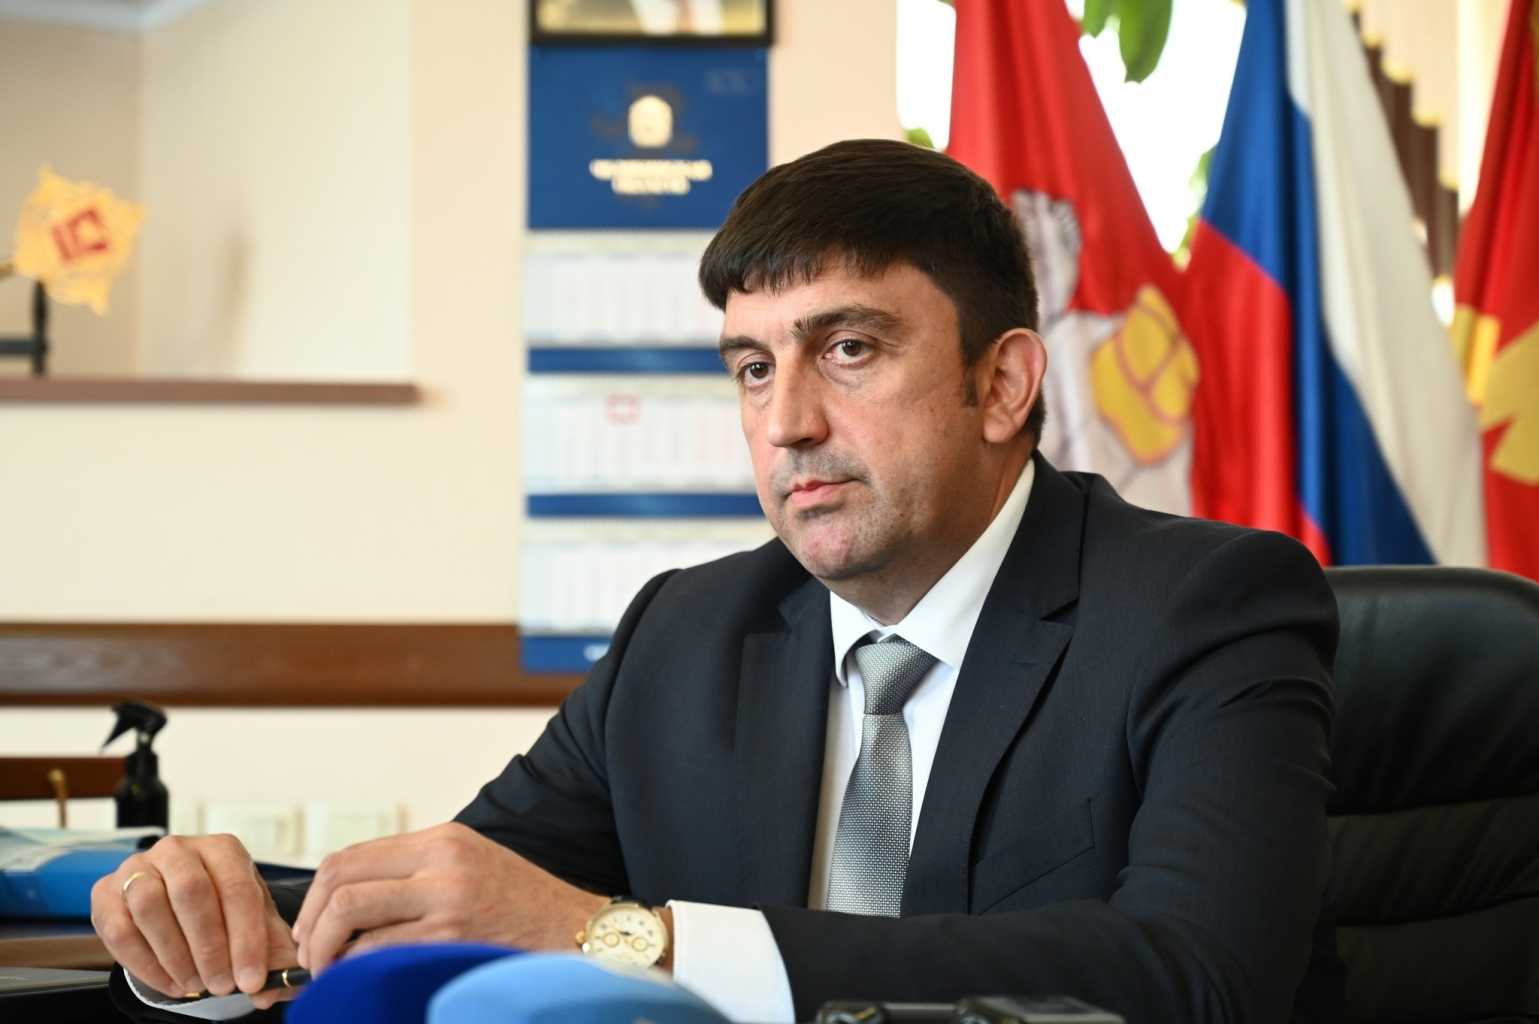 Арест муниципального чиновника уронил рейтинг мэра Златоуста